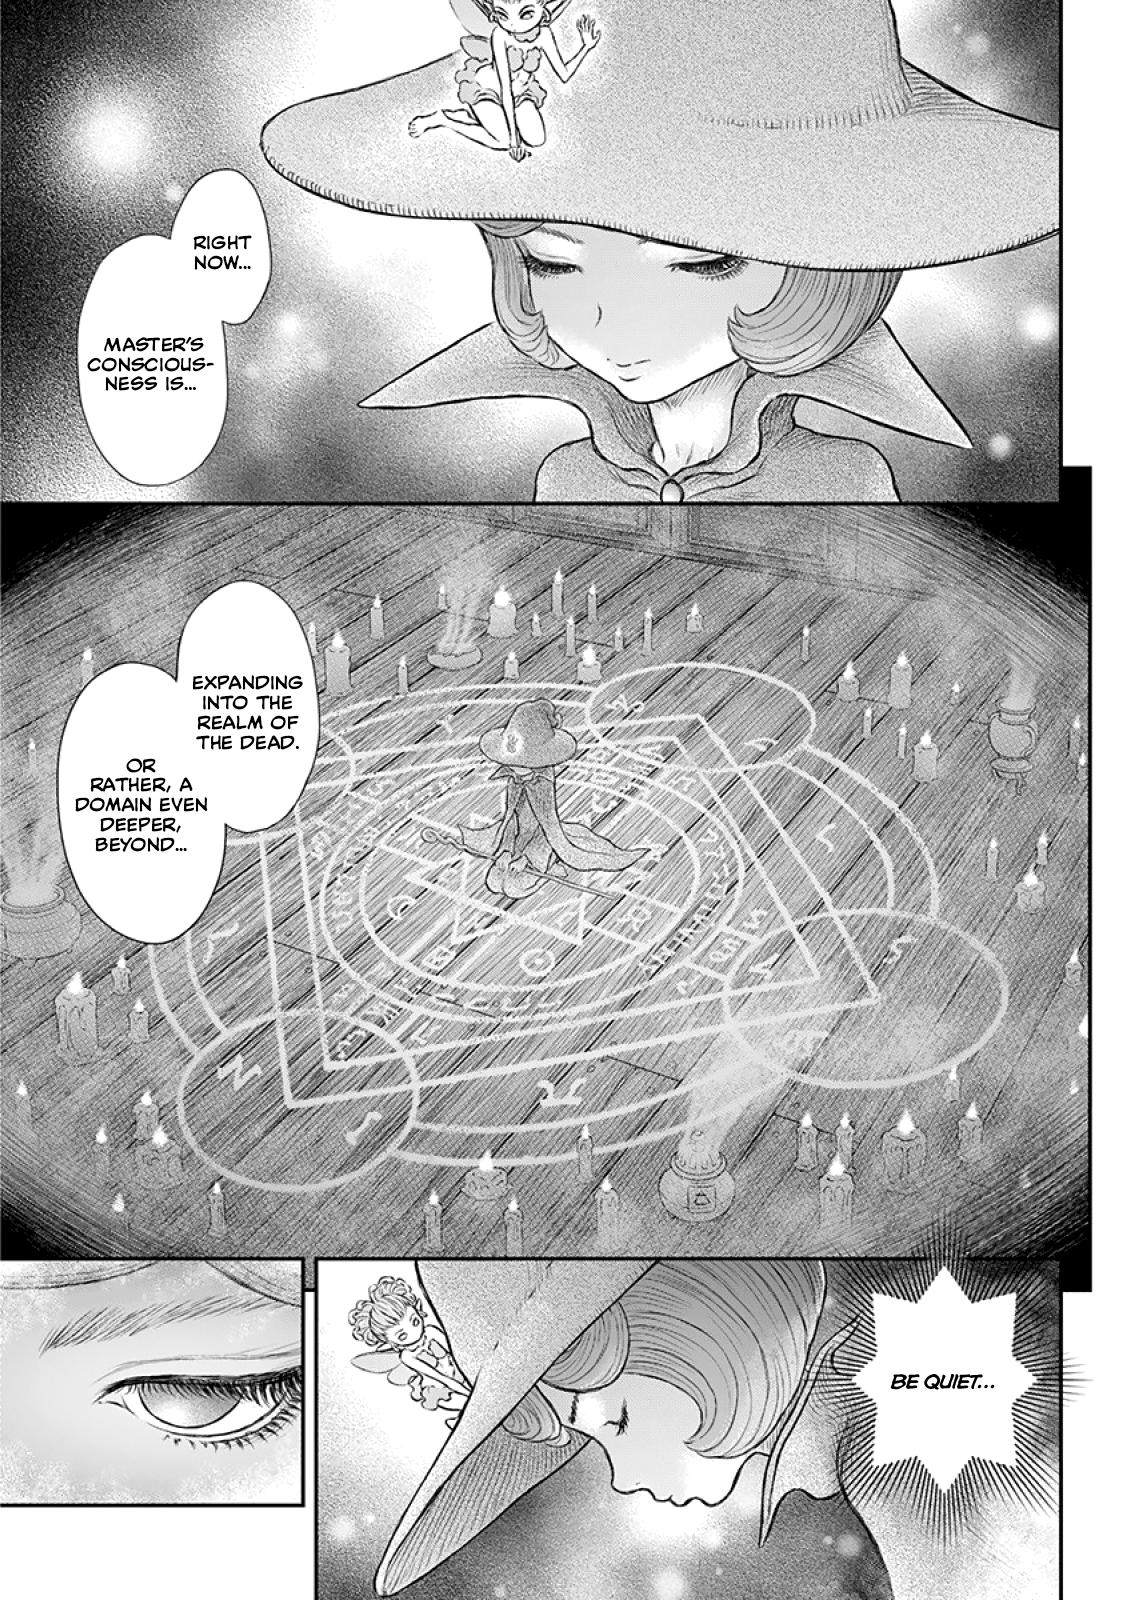 Berserk Manga Chapter 373 image 05